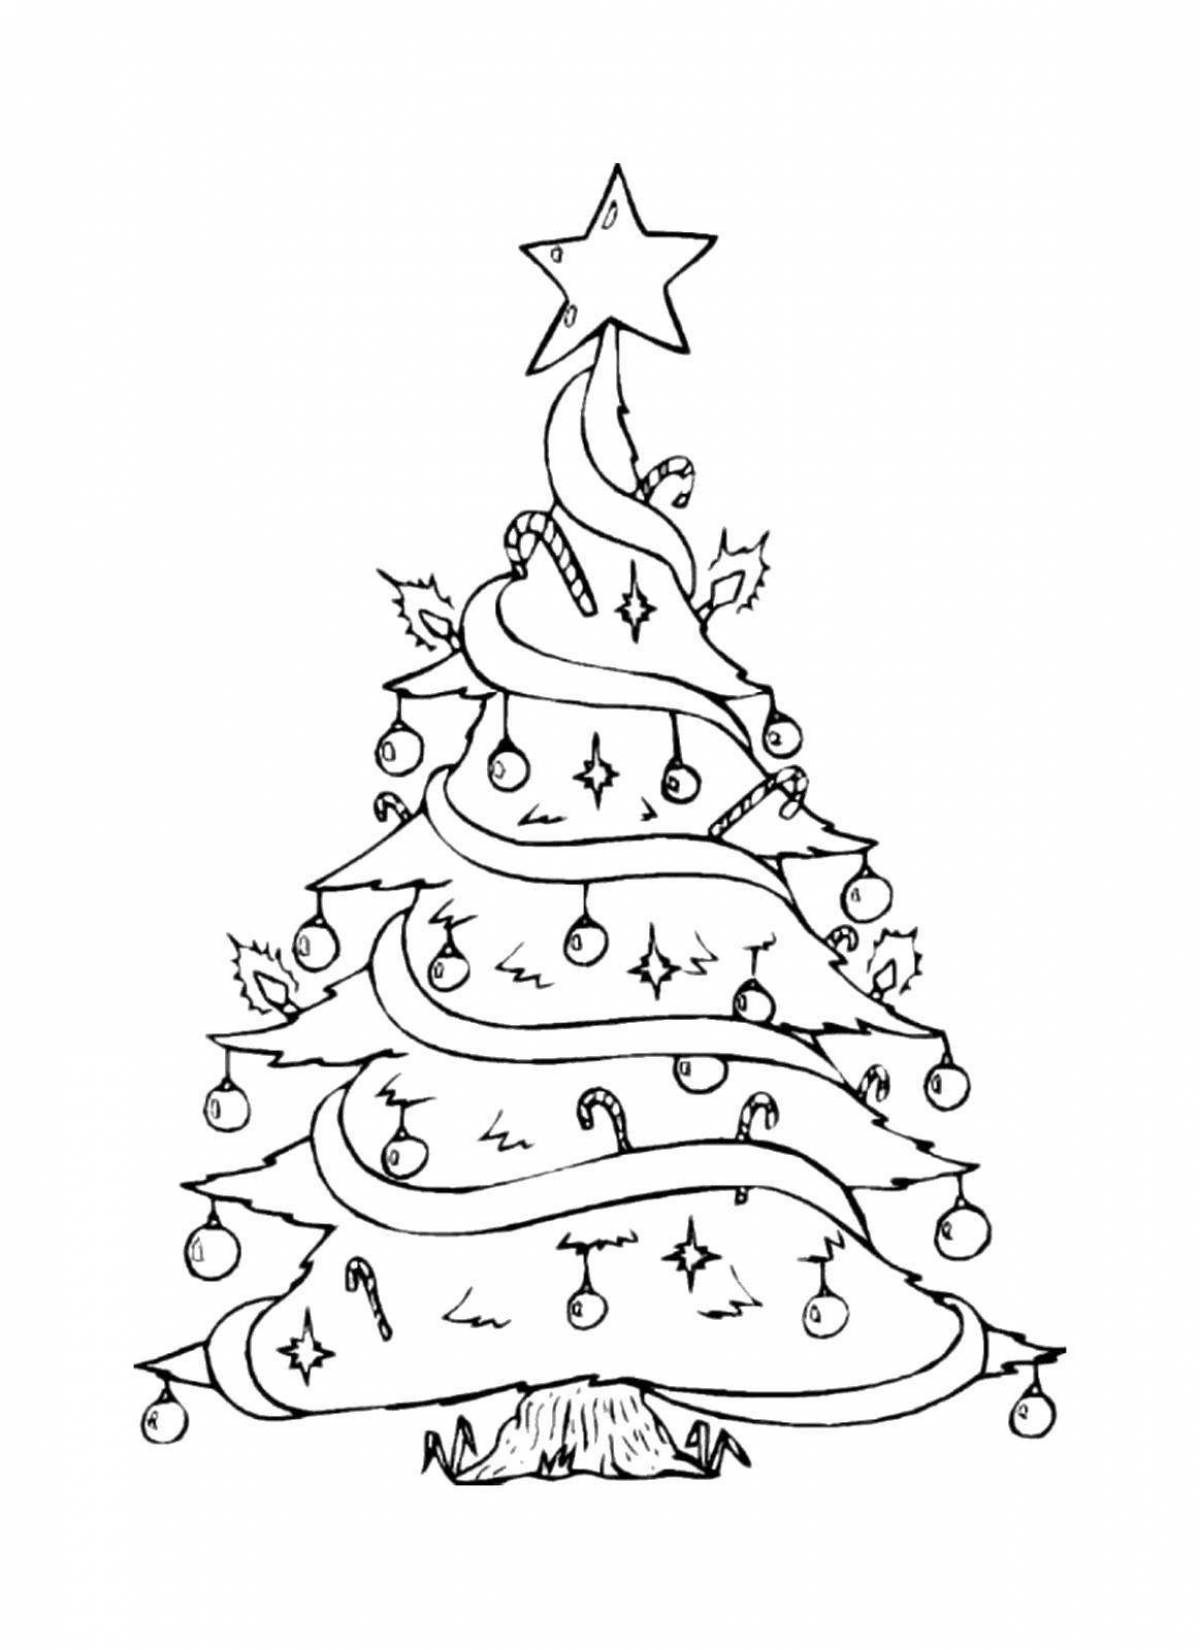 Раскраска большая рождественская елка для детей 4-5 лет